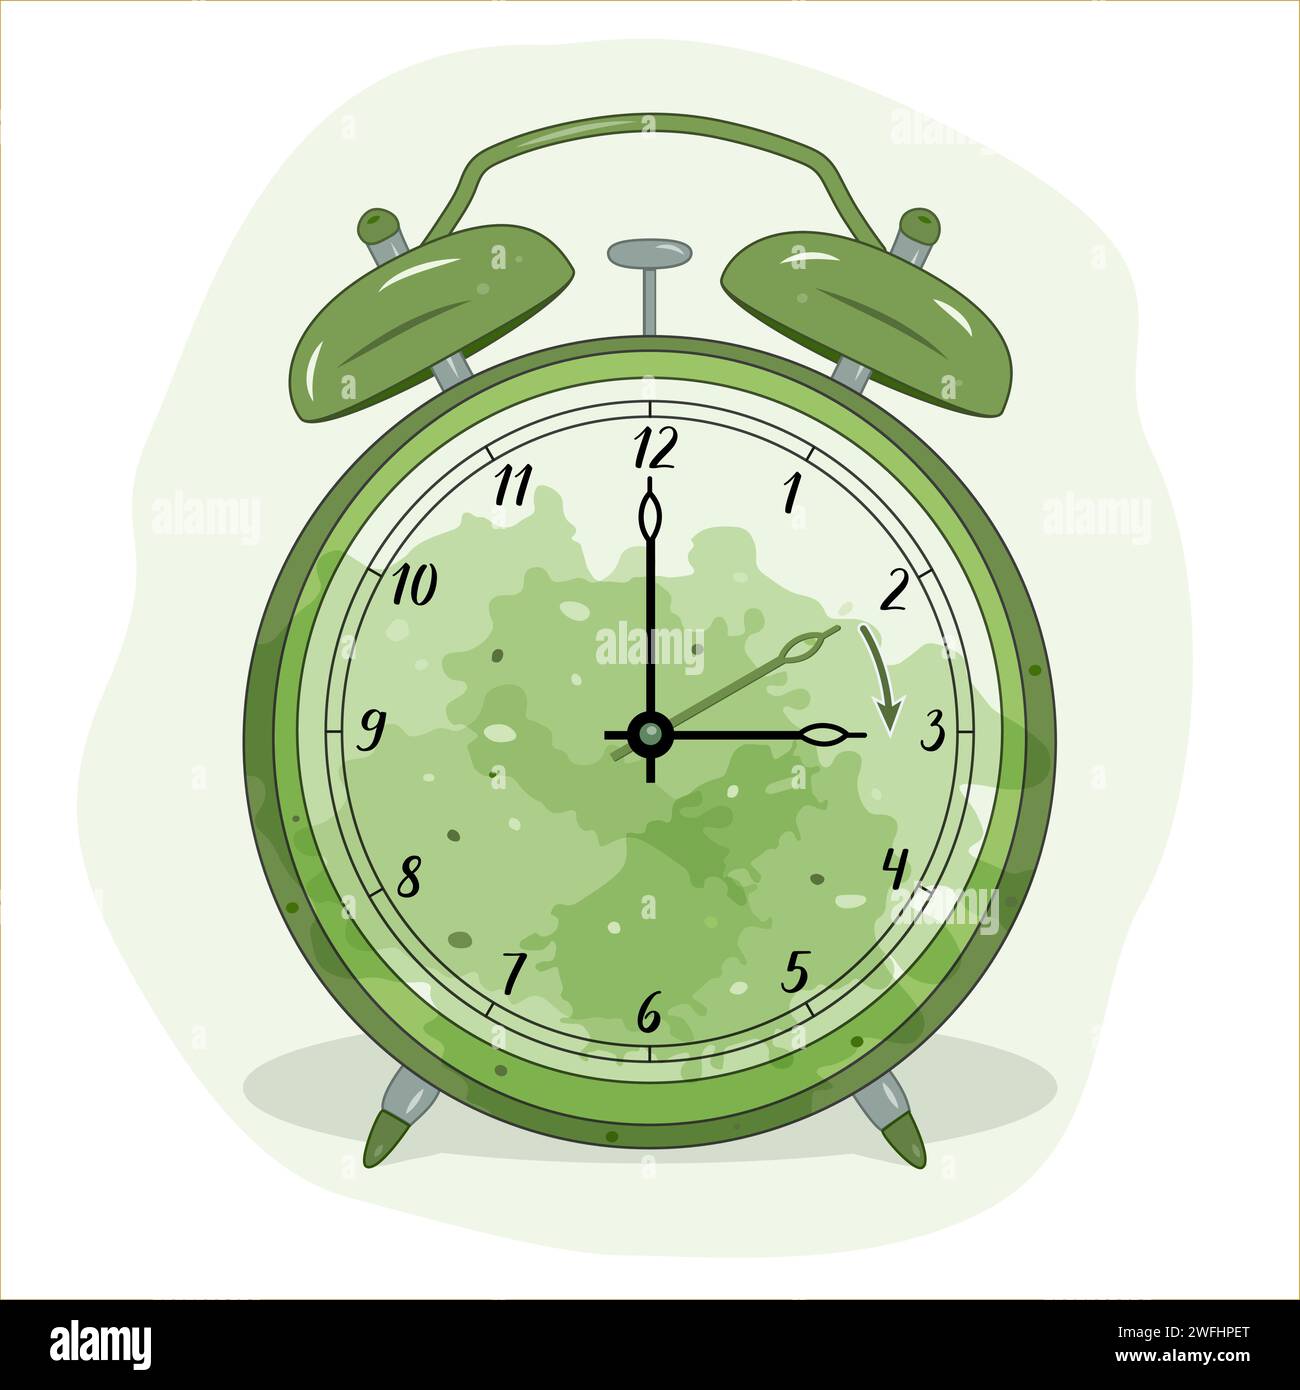 Immagine di una sveglia. Il colore verde simboleggia l'ora primaverile. Simbolo di cambio orario. Spostare le mani in avanti dalle 2:00 alle 3:00. Illustrazione Vettoriale